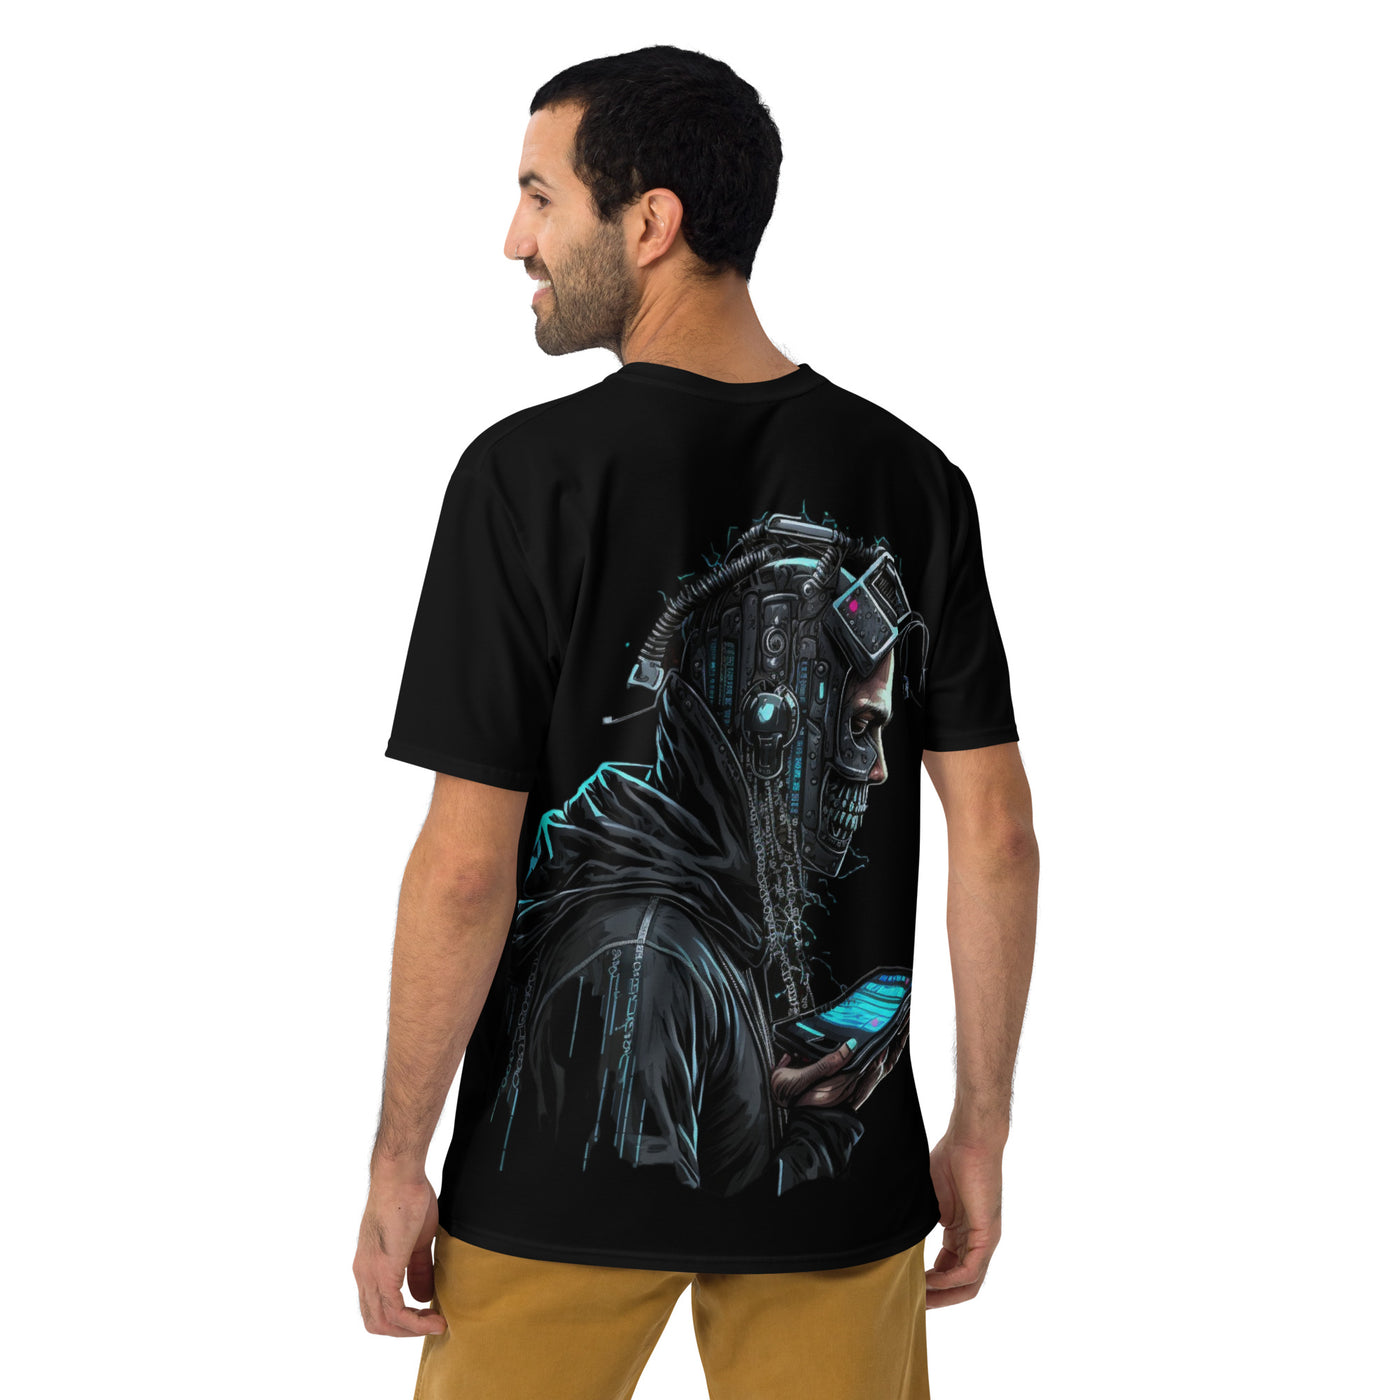 Cyberware assassin v1 - Men's t-shirt (back print)